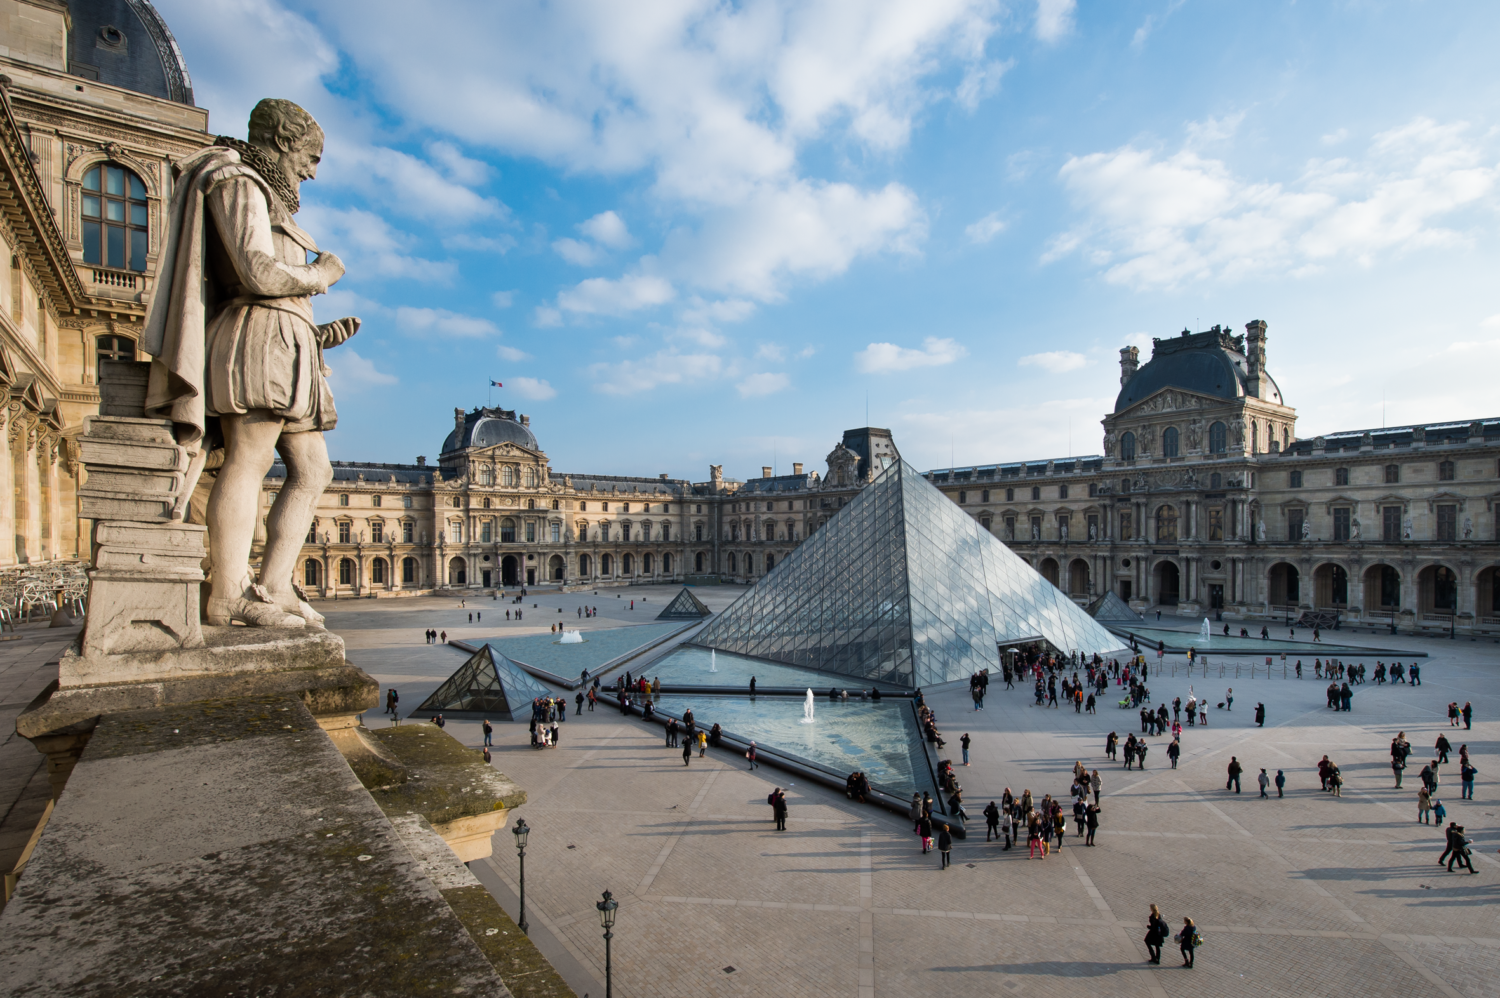 Expérience inoubliable au Musée du Louvre